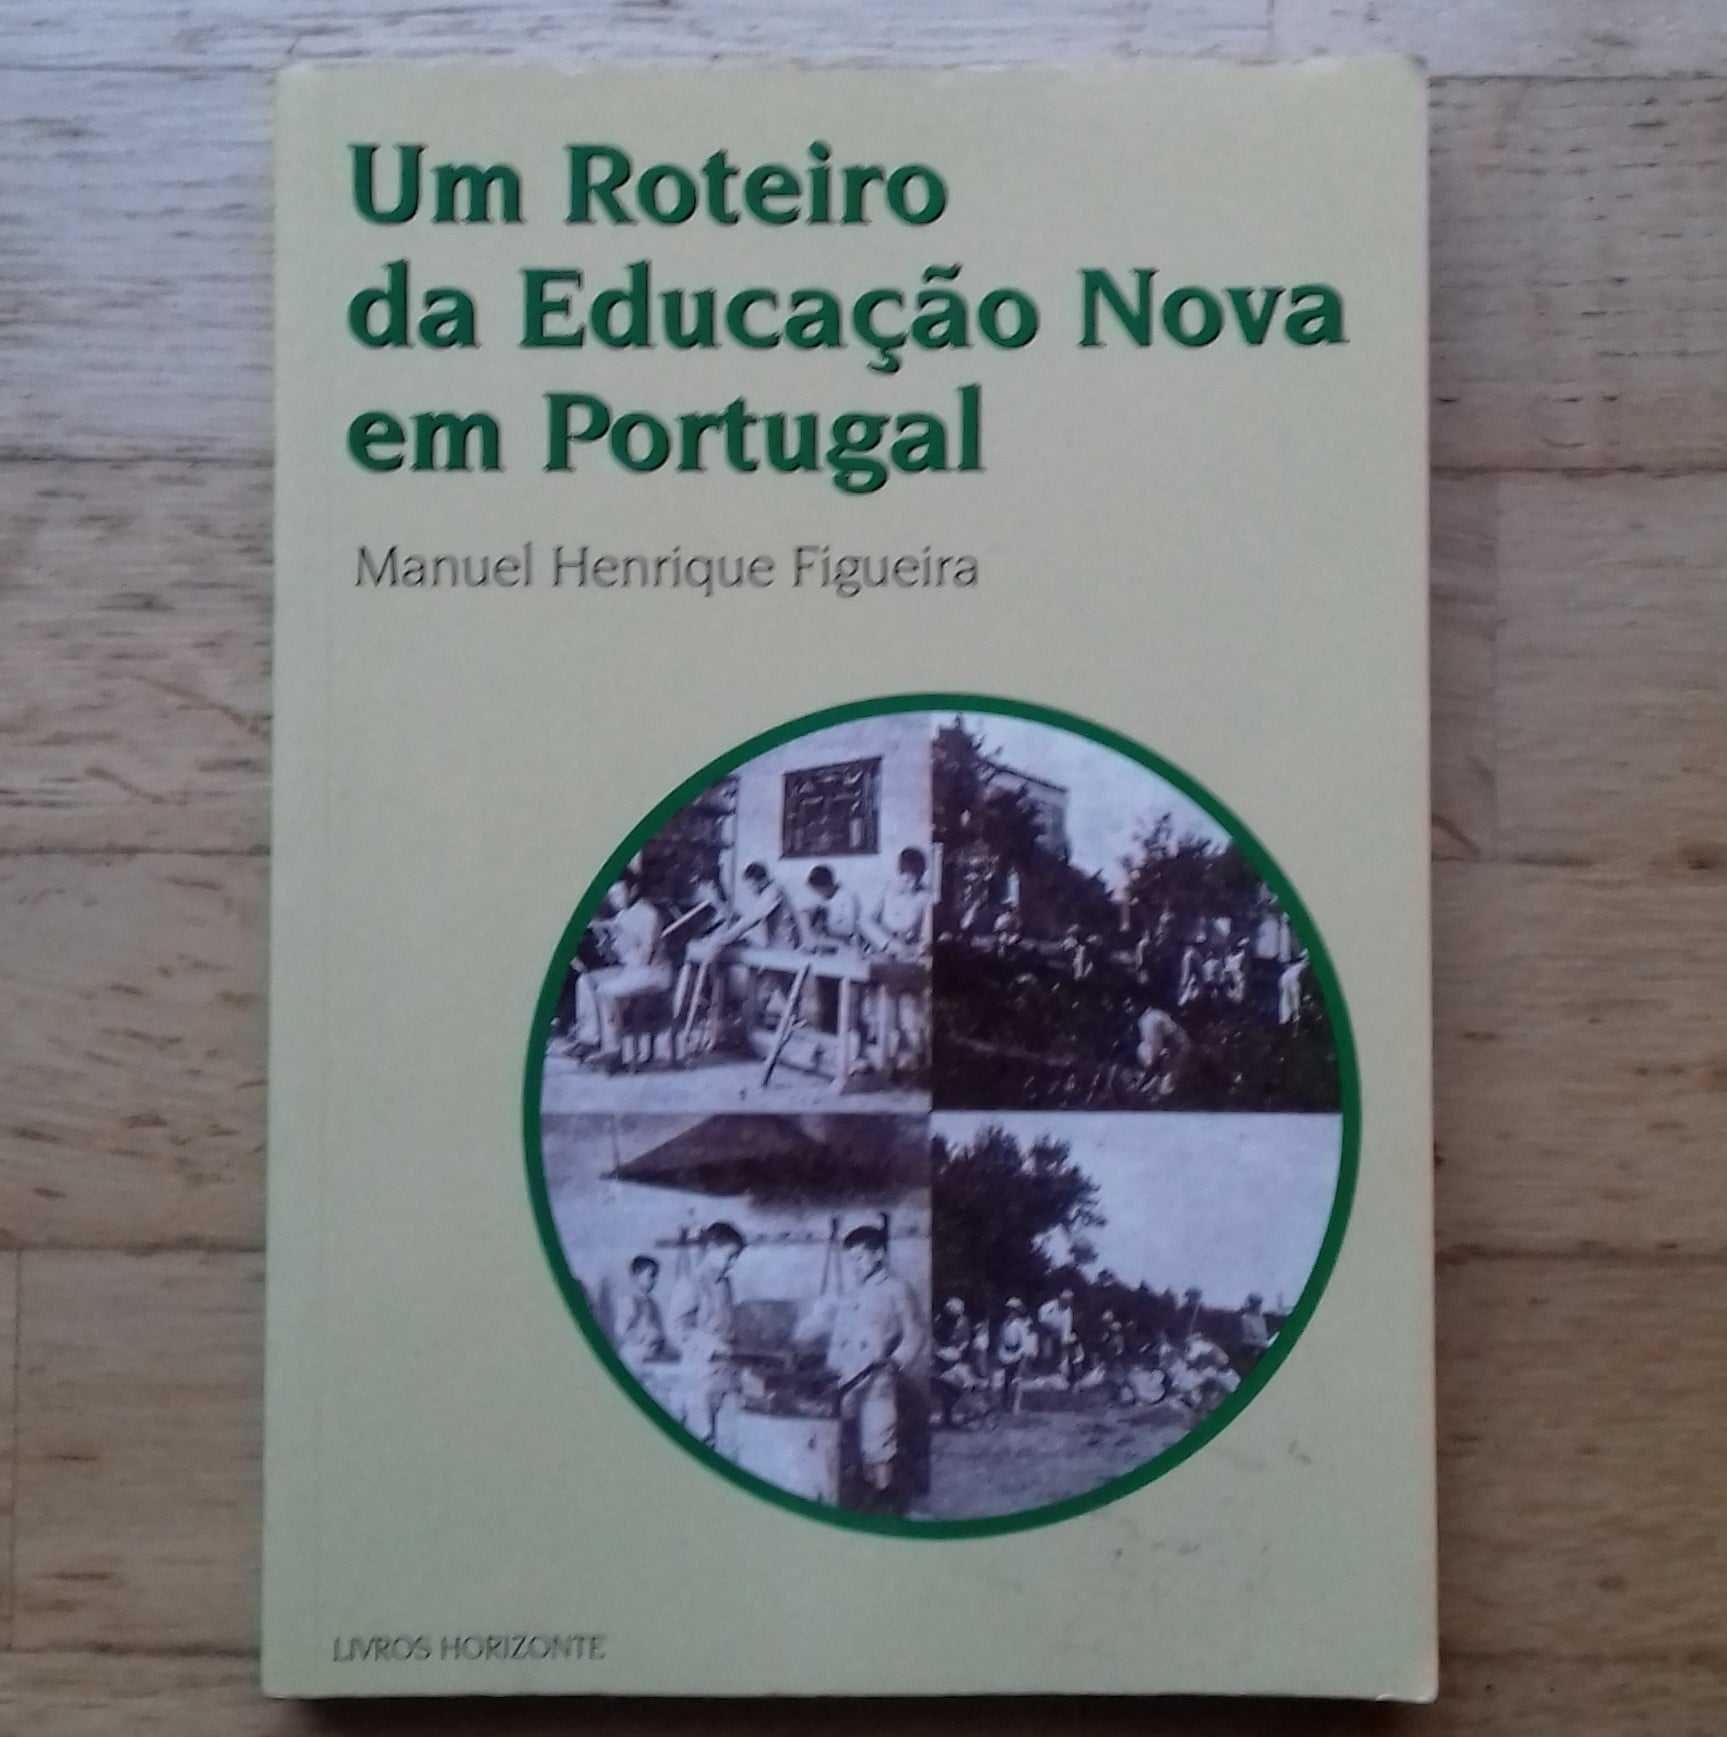 Um Roteiro da Educação Nova em Portugal, de Manuel Henrique Figueira